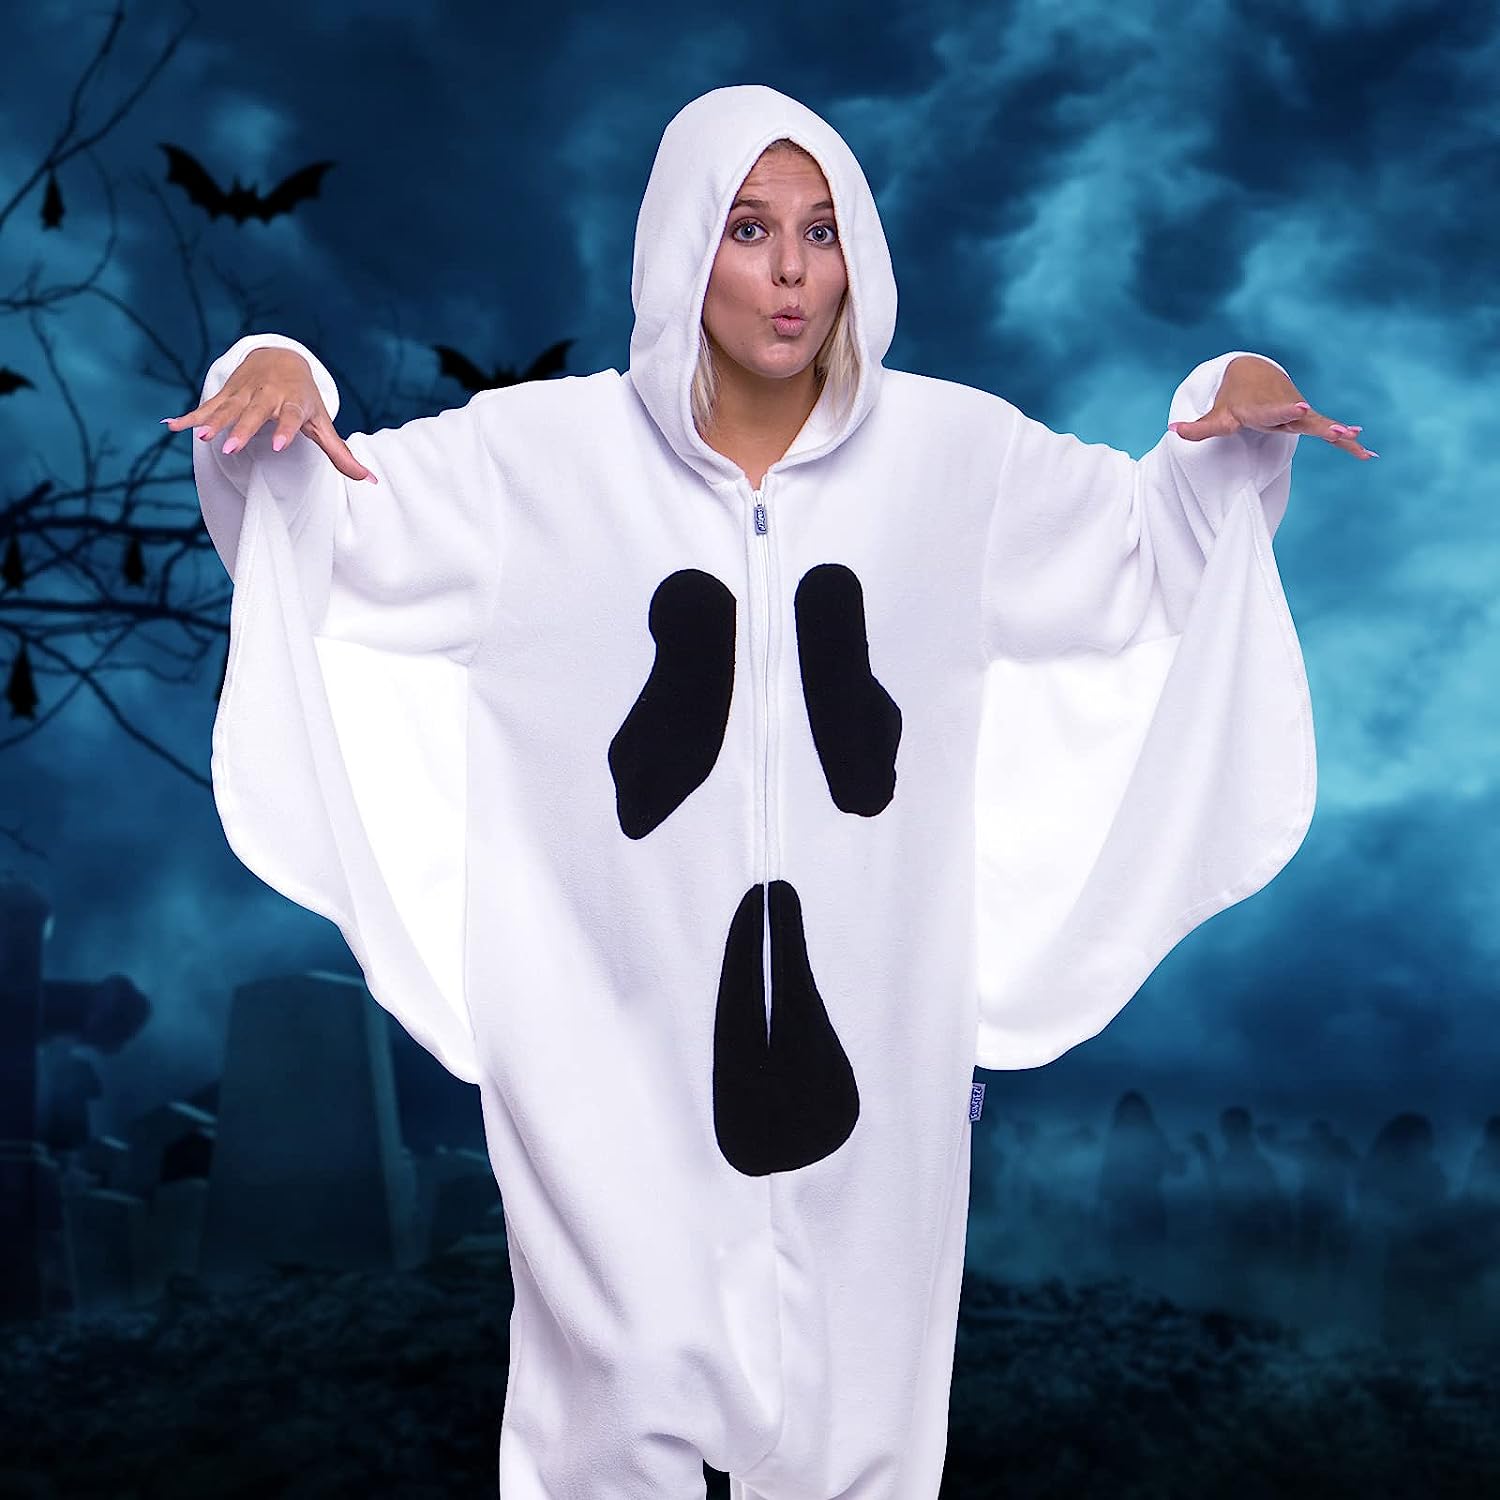 Spooky Ghost Onesie Halloween Costume Cosplay Suit for Women and Men